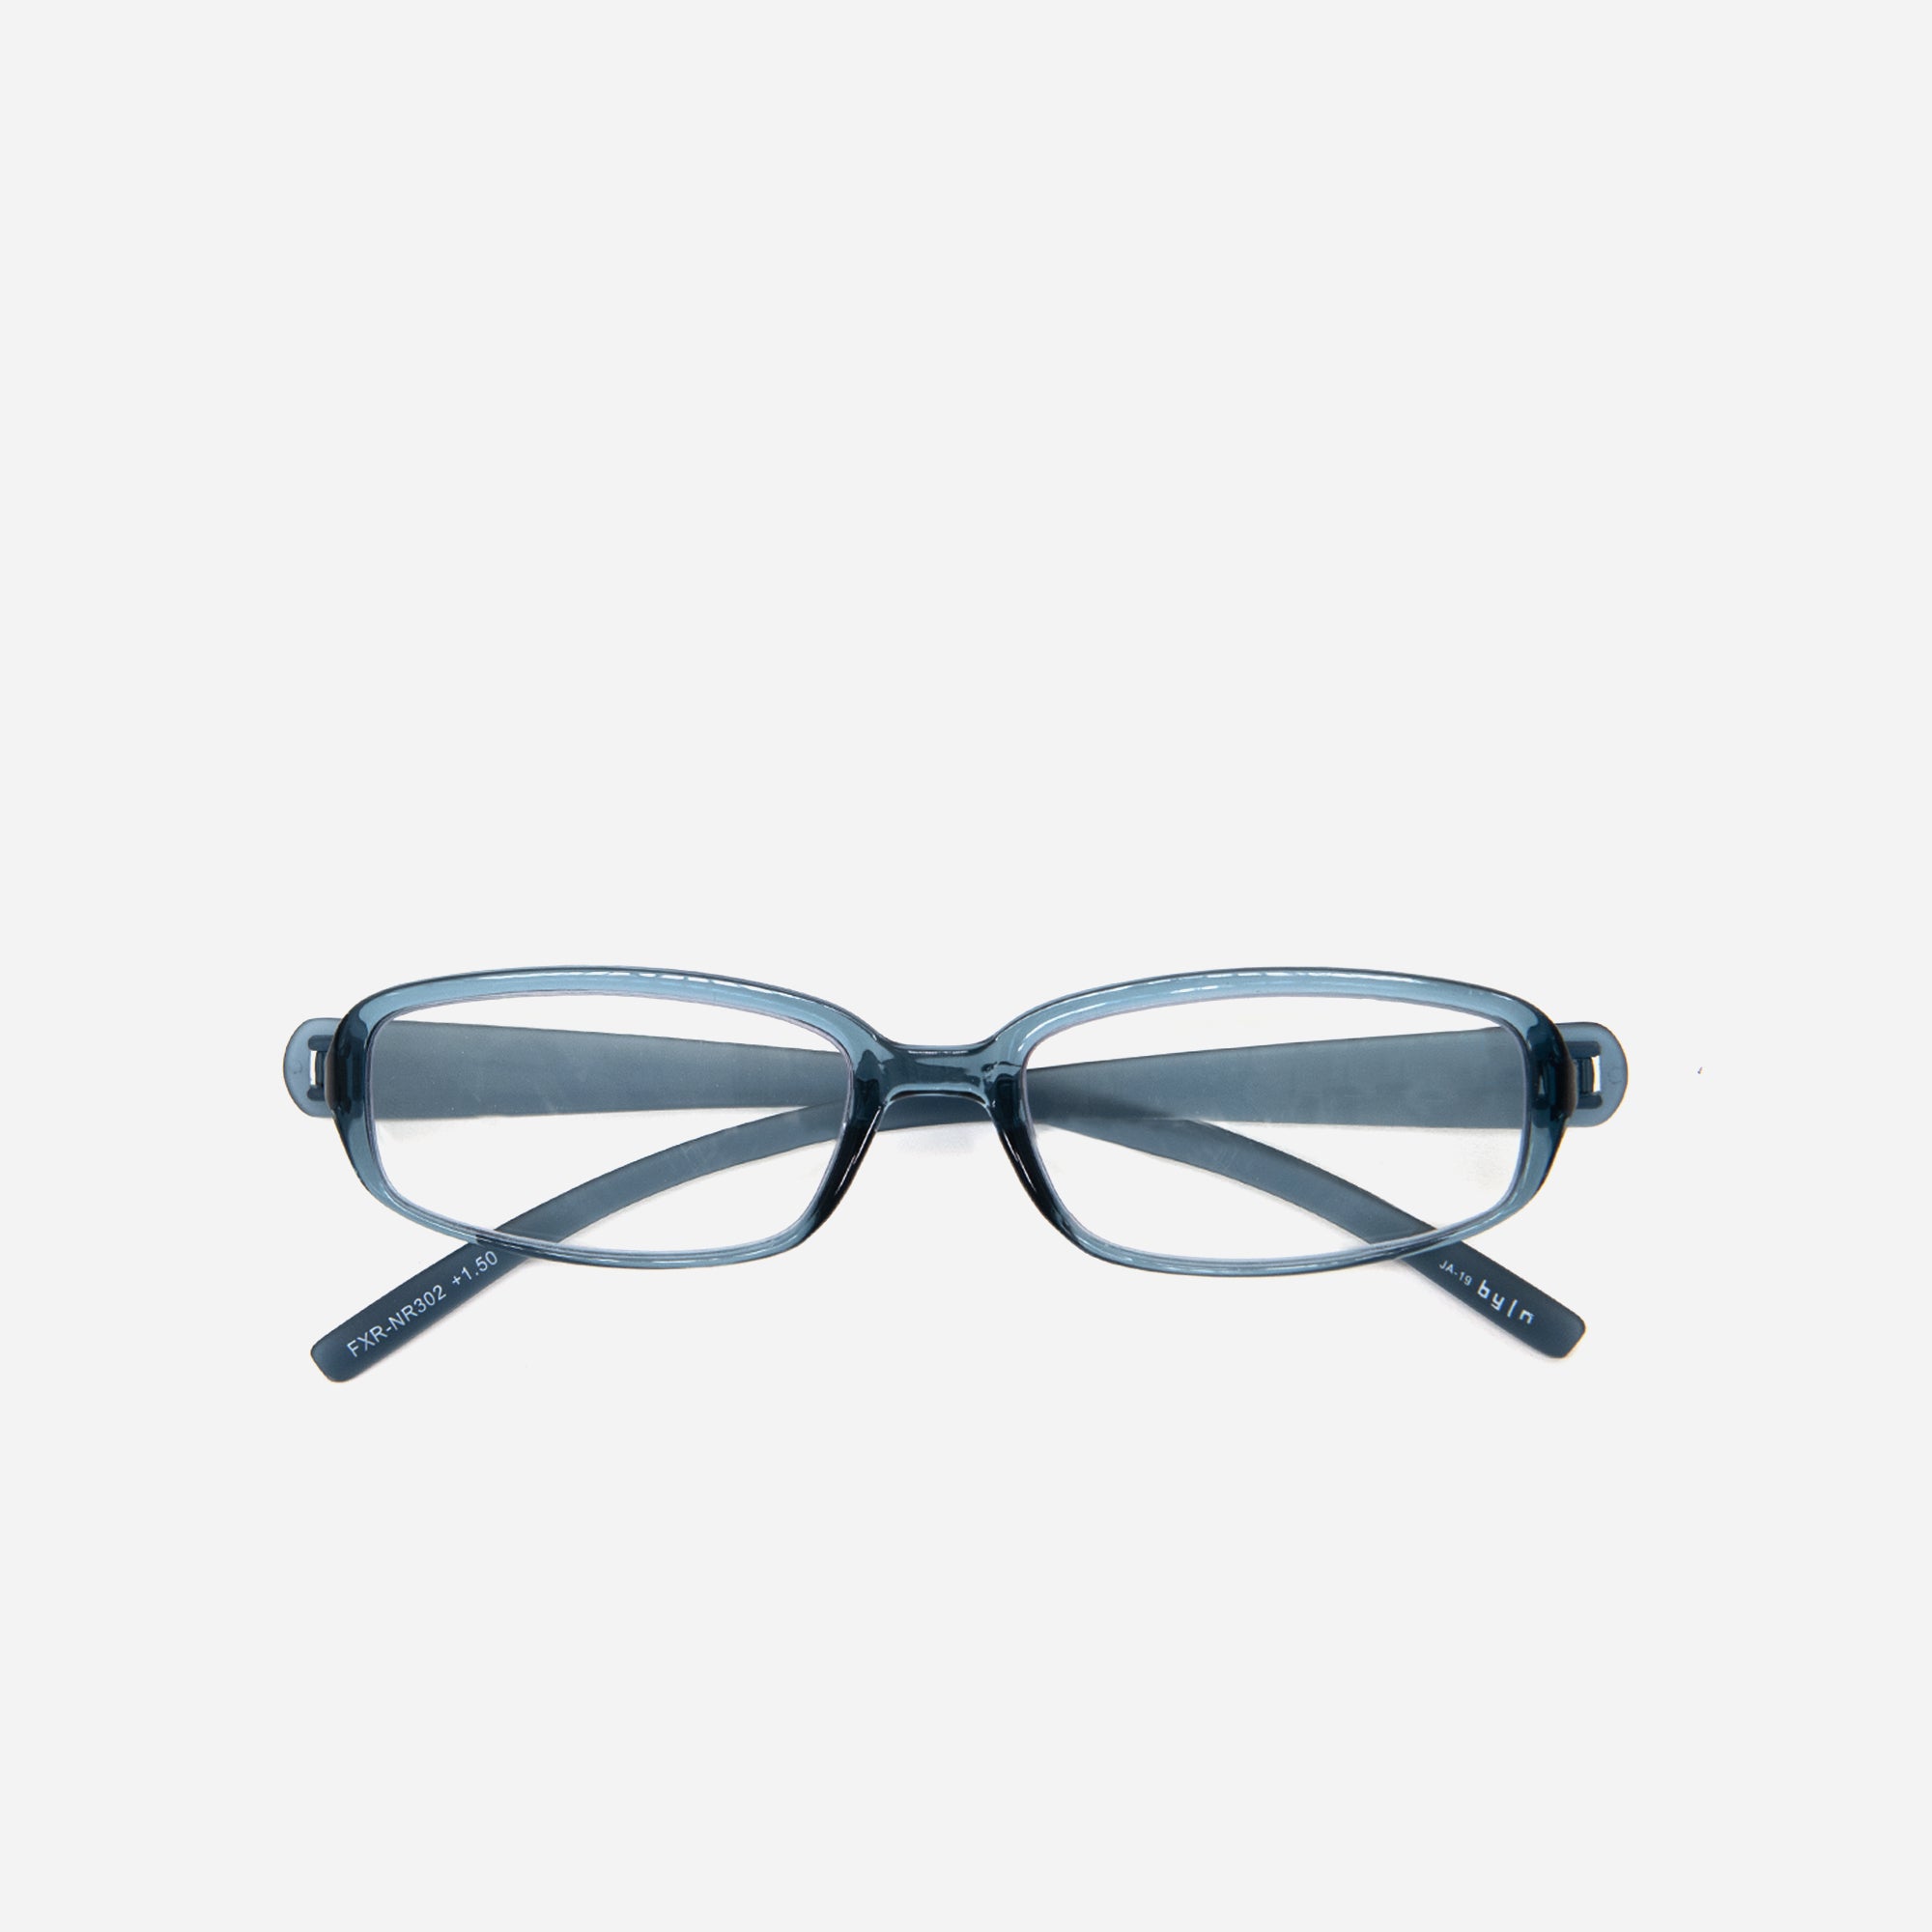 Glasses by Nendo | Shiny Navy +1.50